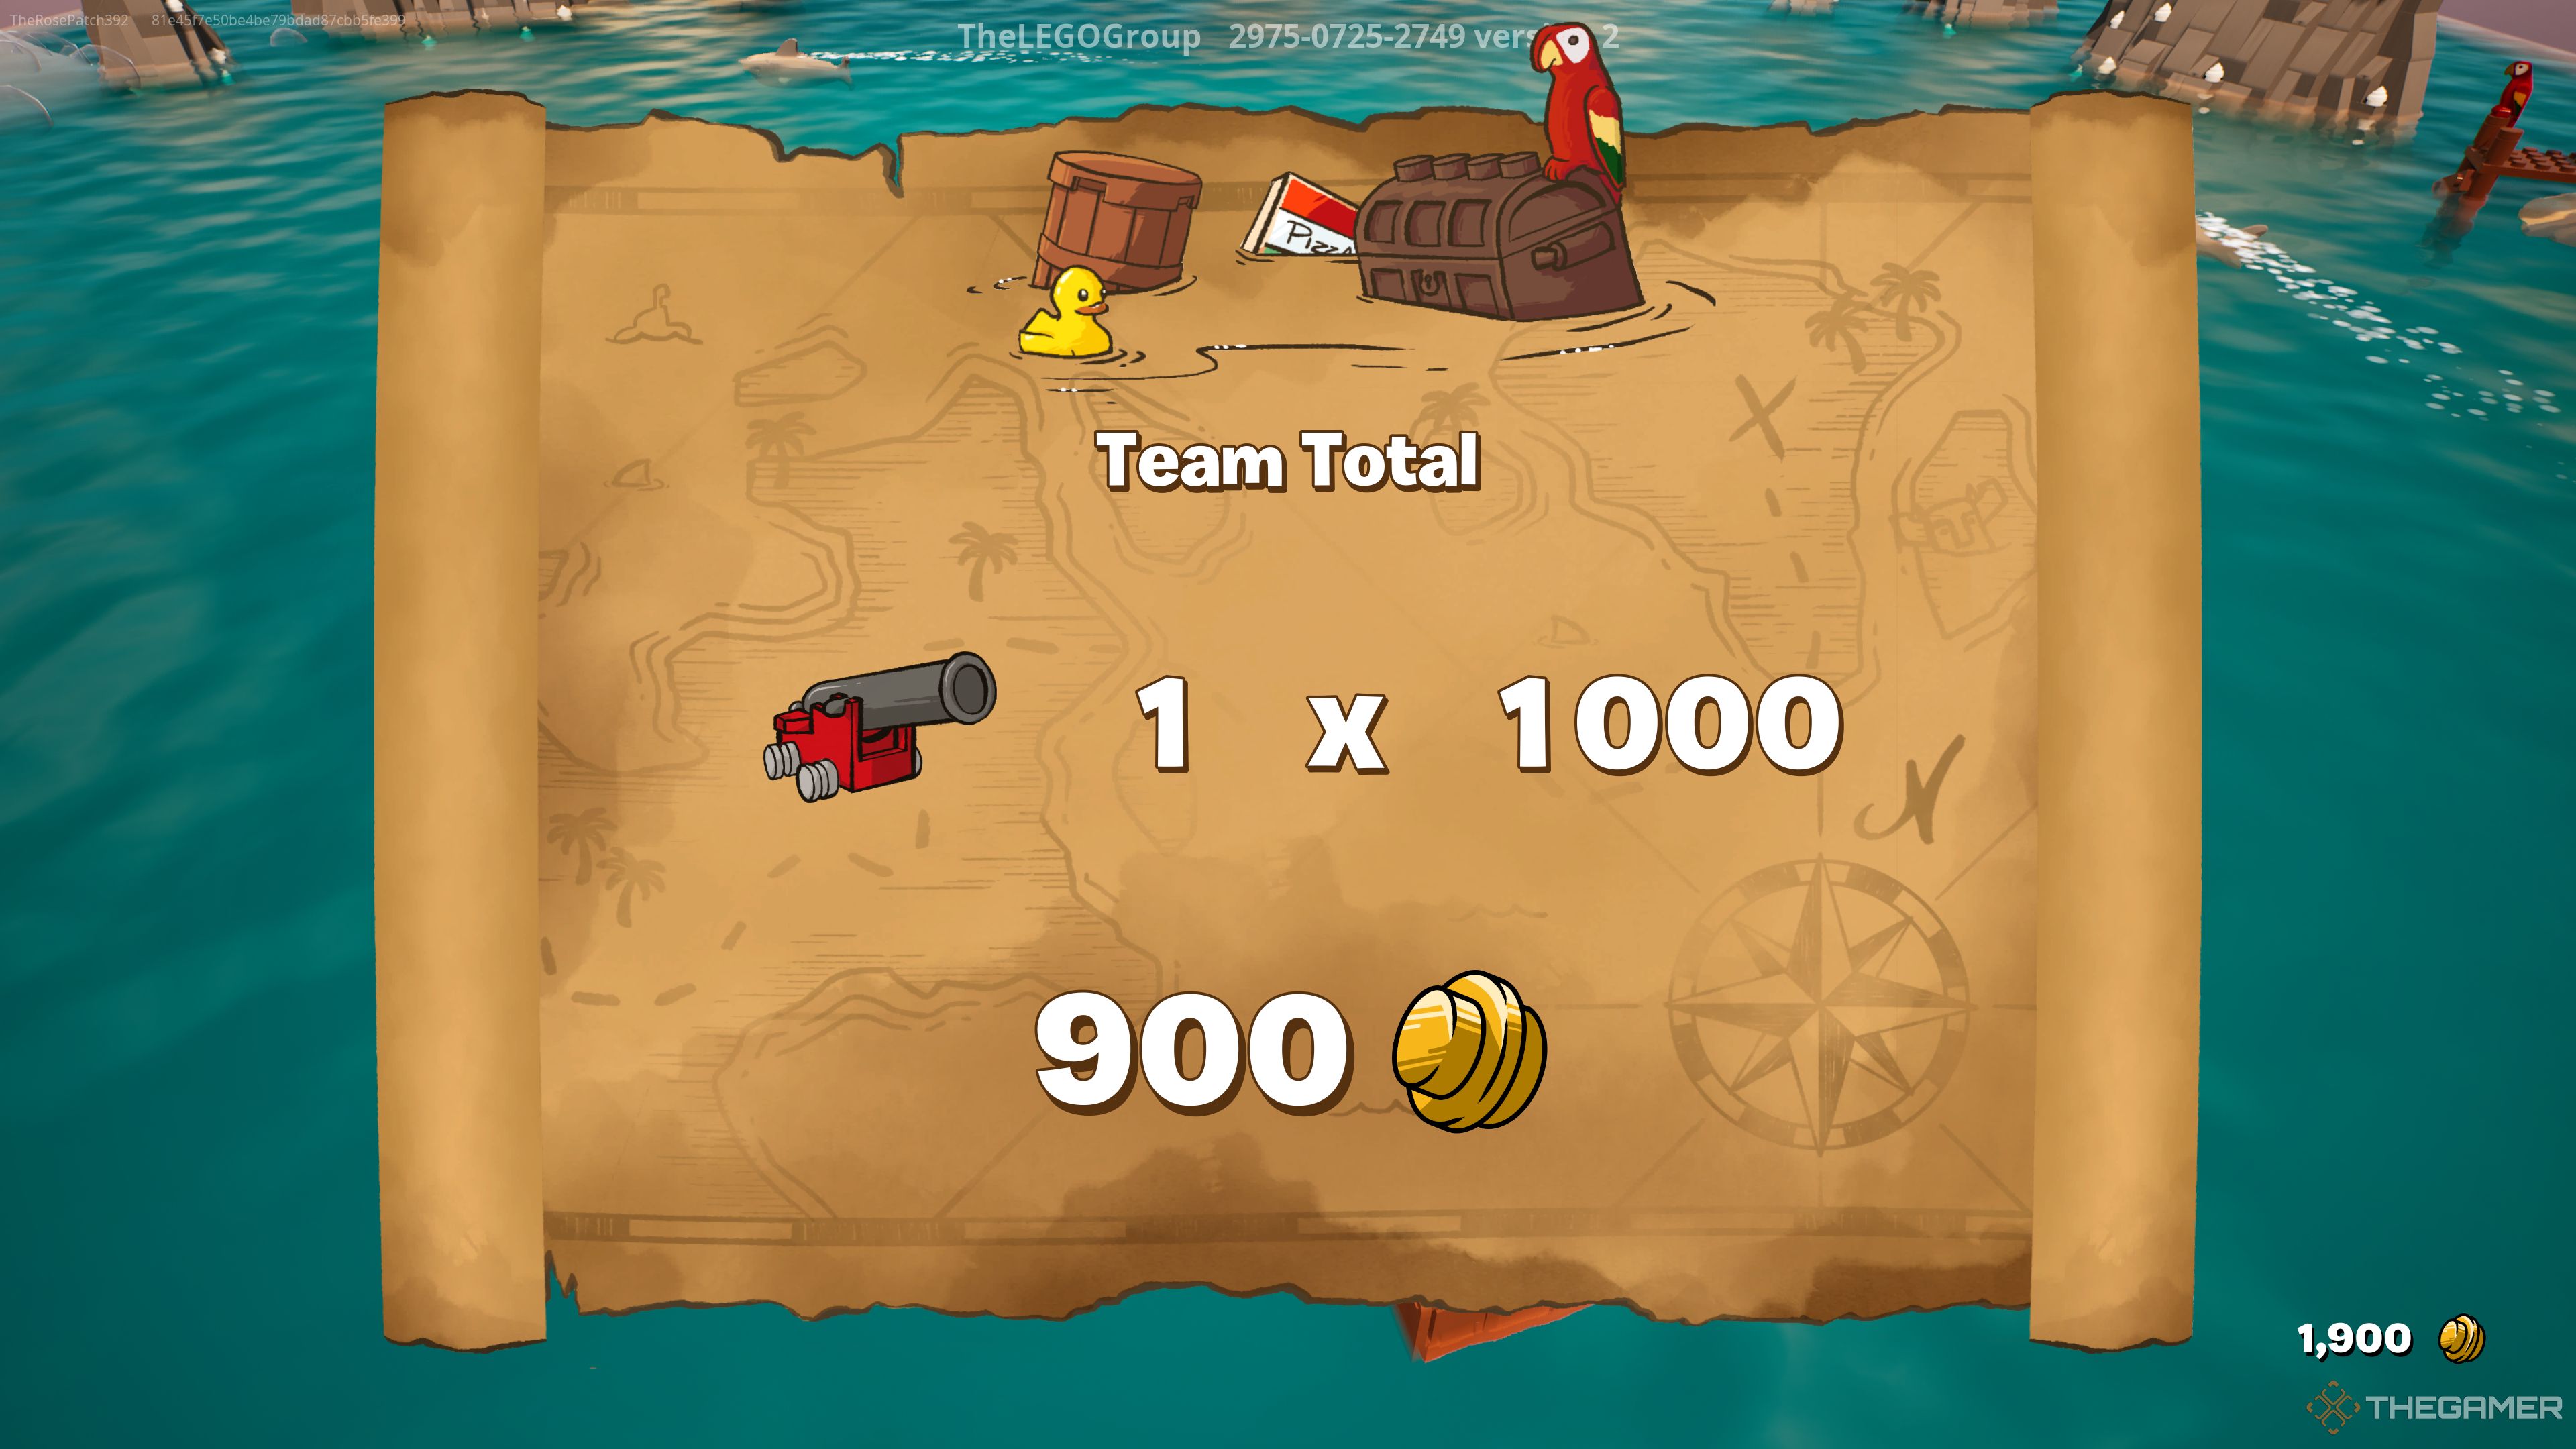 Скриншот общей суммы команды после окончания игры в Lego Фортнайт Лего Выживание на Плоту.